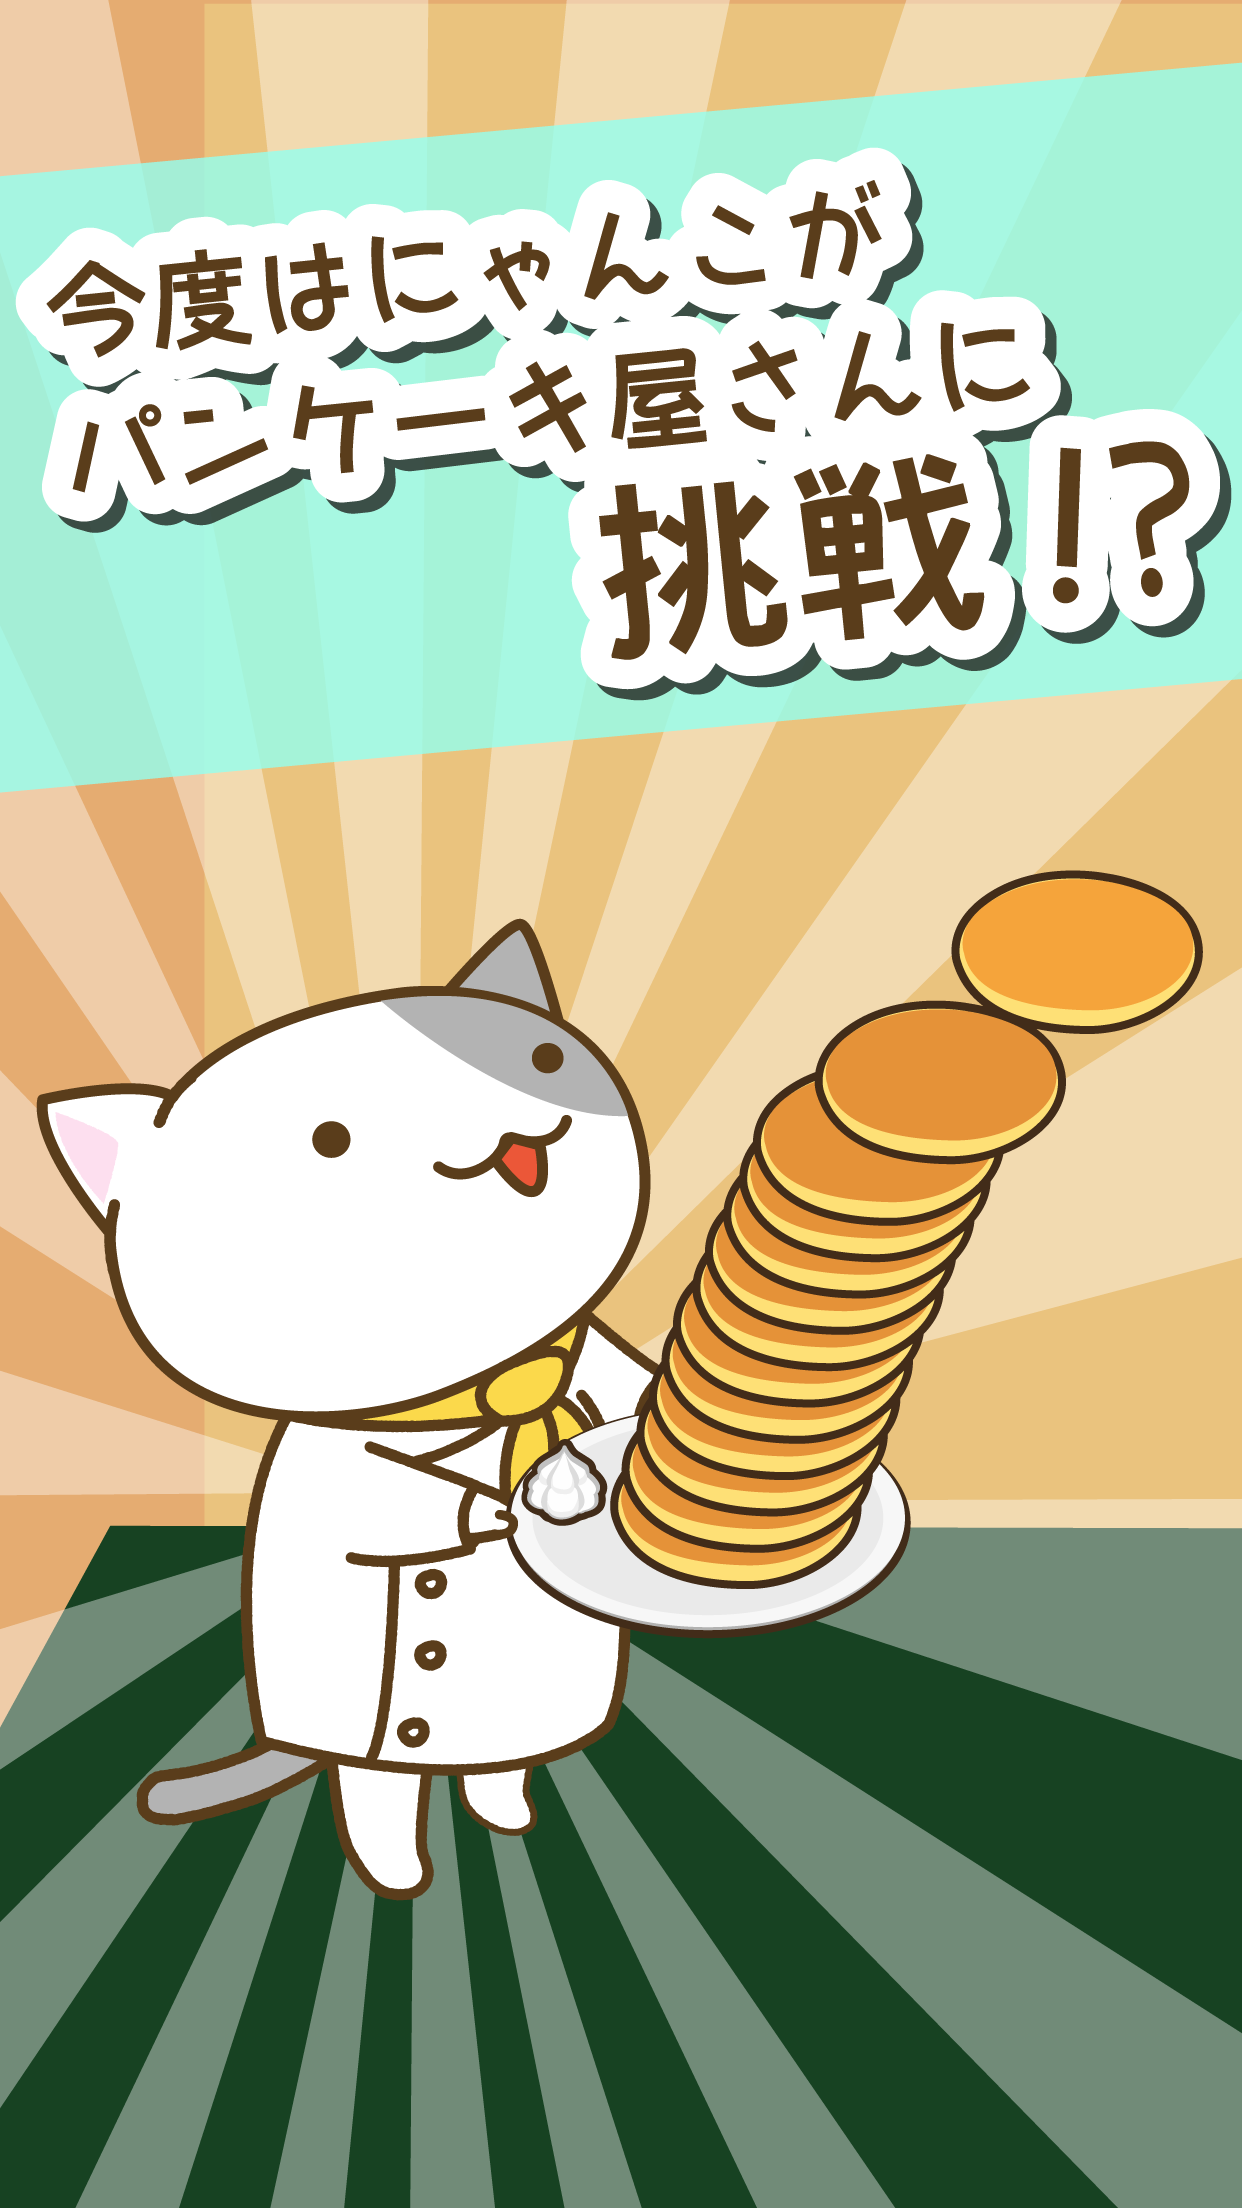 Screenshot 1 of Toko pancake kucing 1.1